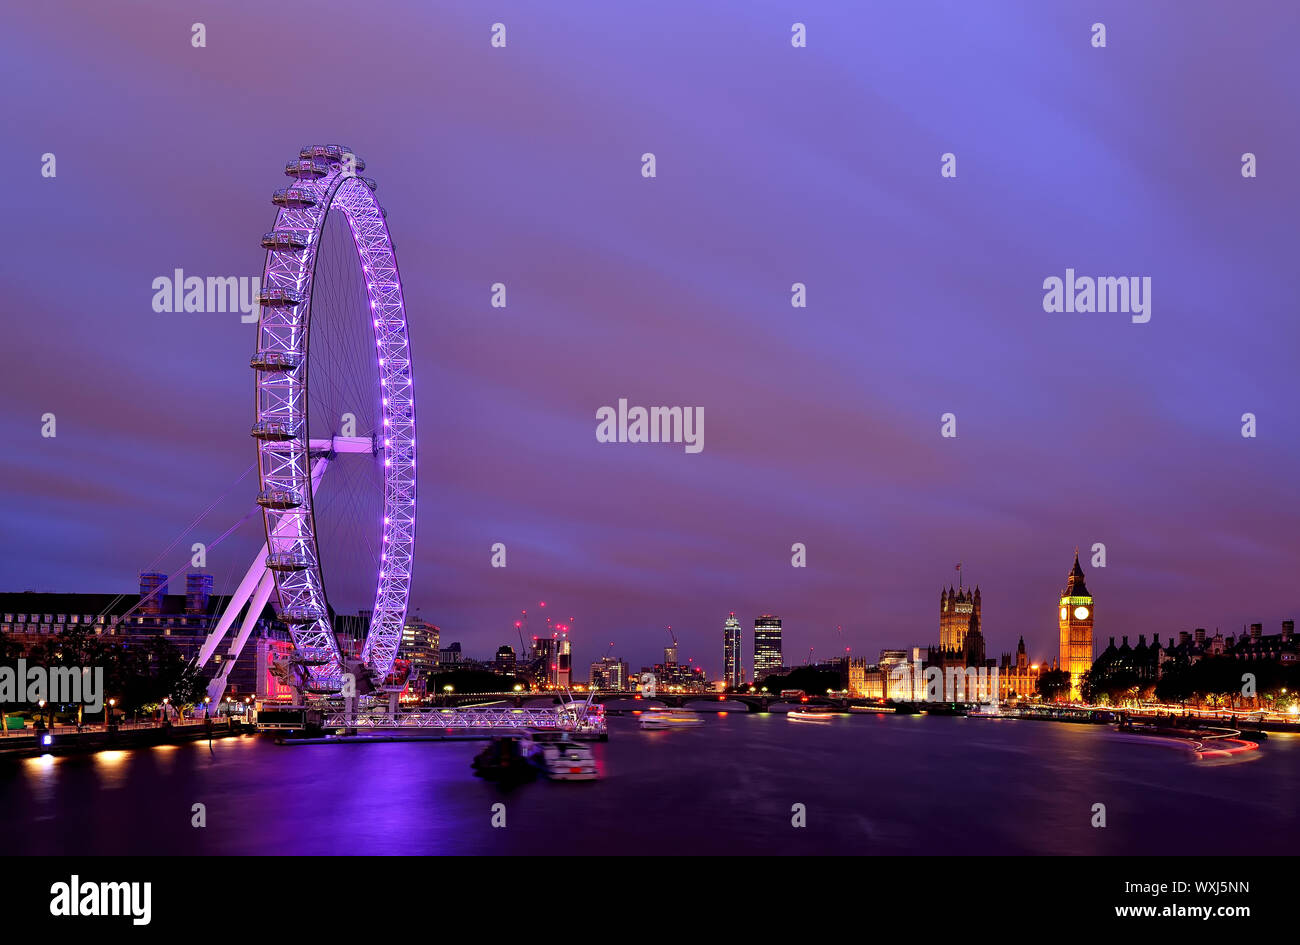 Ville et London Eye au crépuscule, Londres, Angleterre, Royaume-Uni Banque D'Images